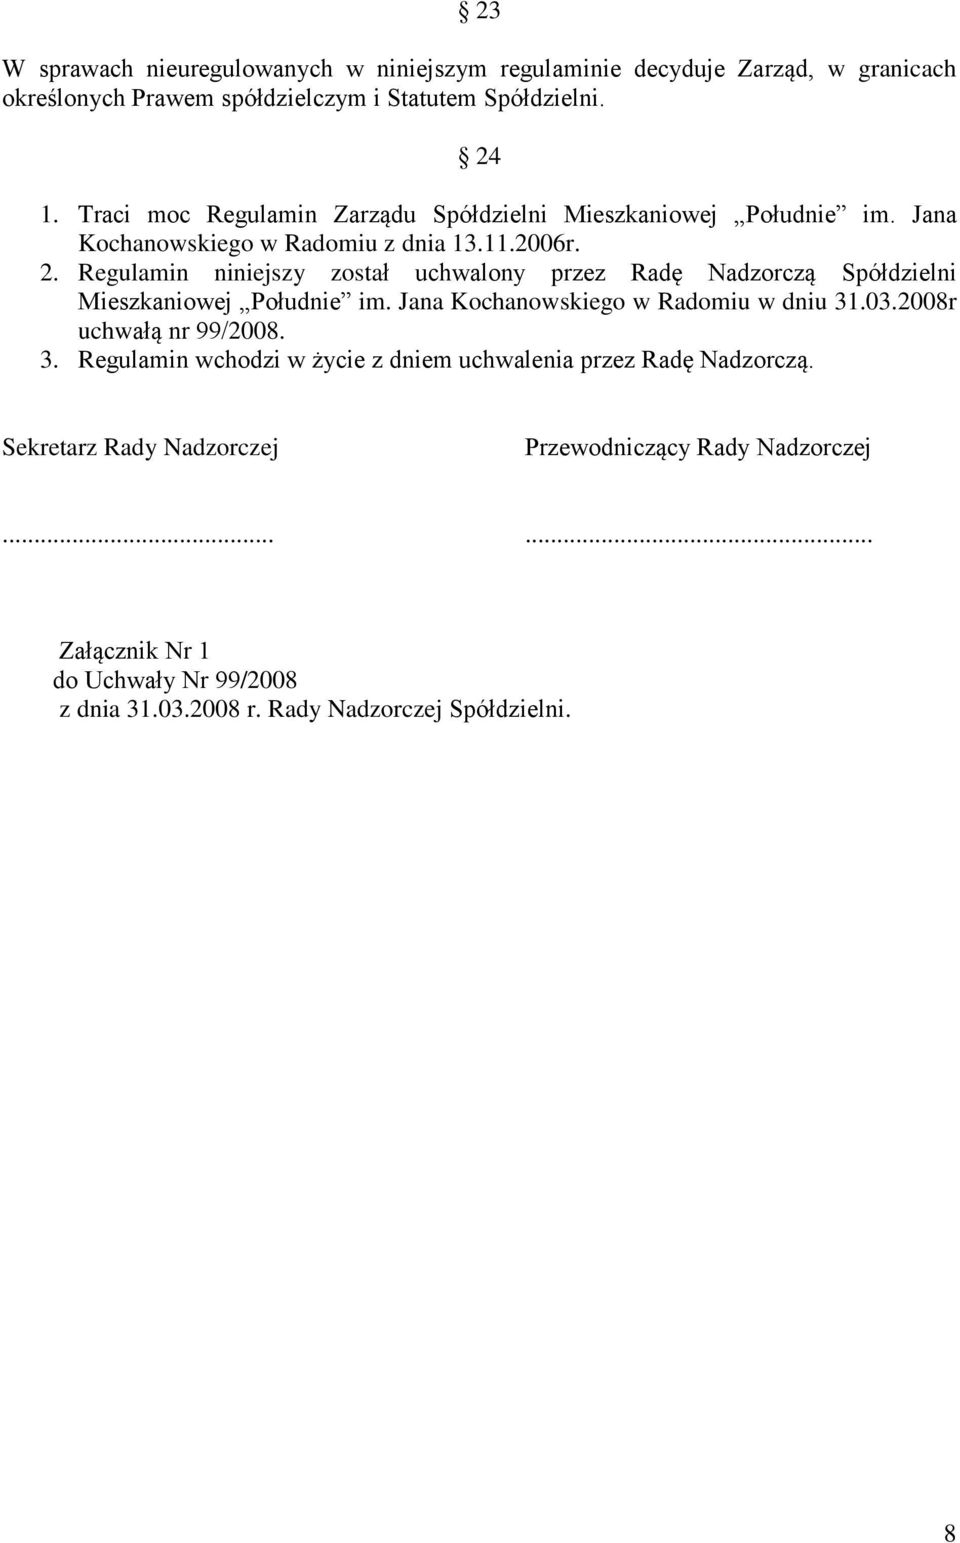 Regulamin niniejszy został uchwalony przez Radę Nadzorczą Spółdzielni Mieszkaniowej Południe im. Jana Kochanowskiego w Radomiu w dniu 31.03.